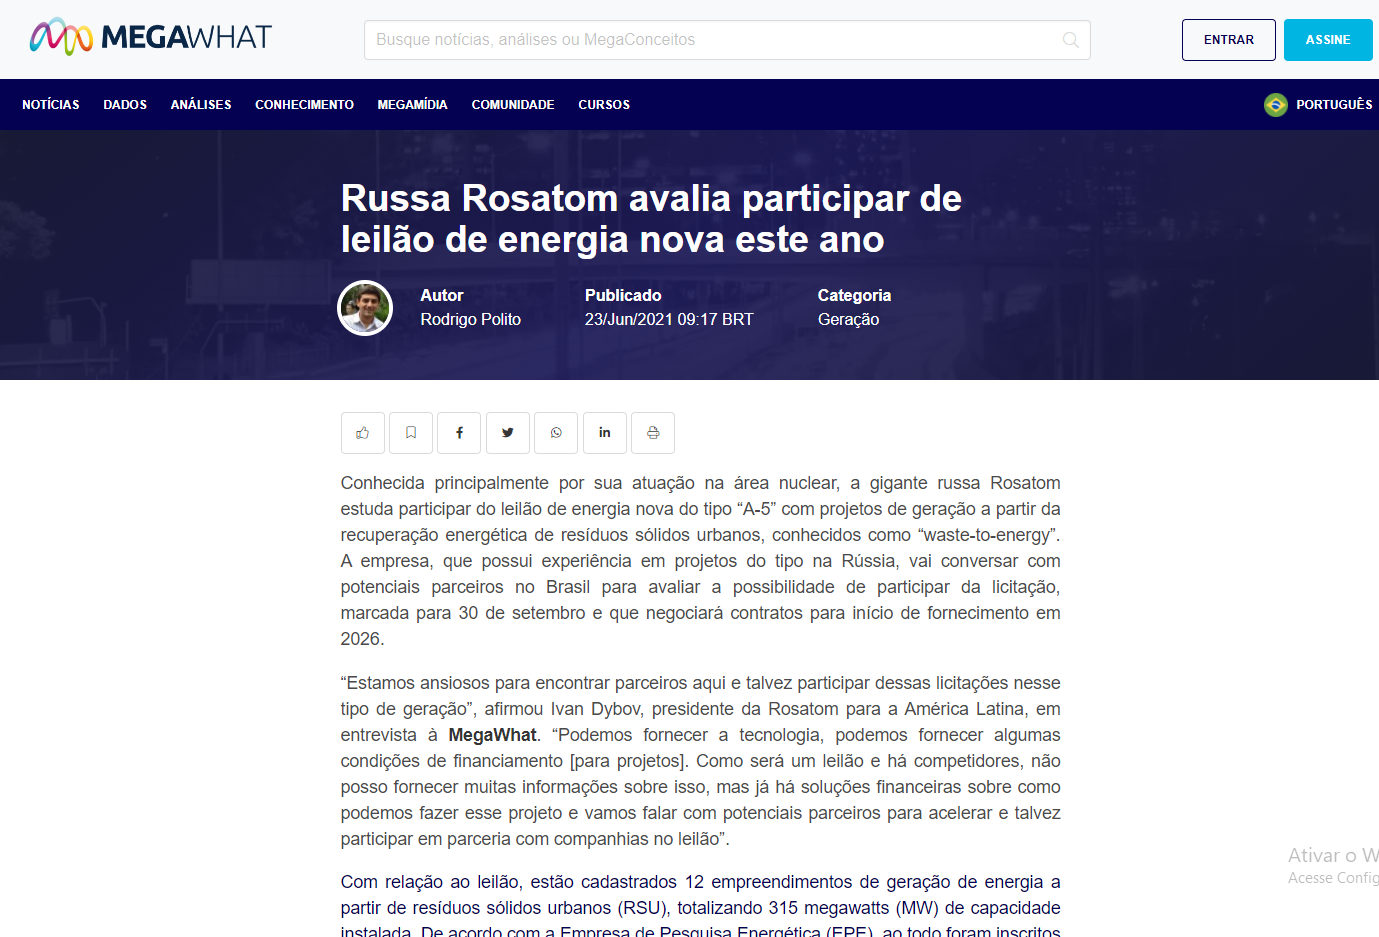 Russa Rosatom avalia participar de leilão de energia nova este ano